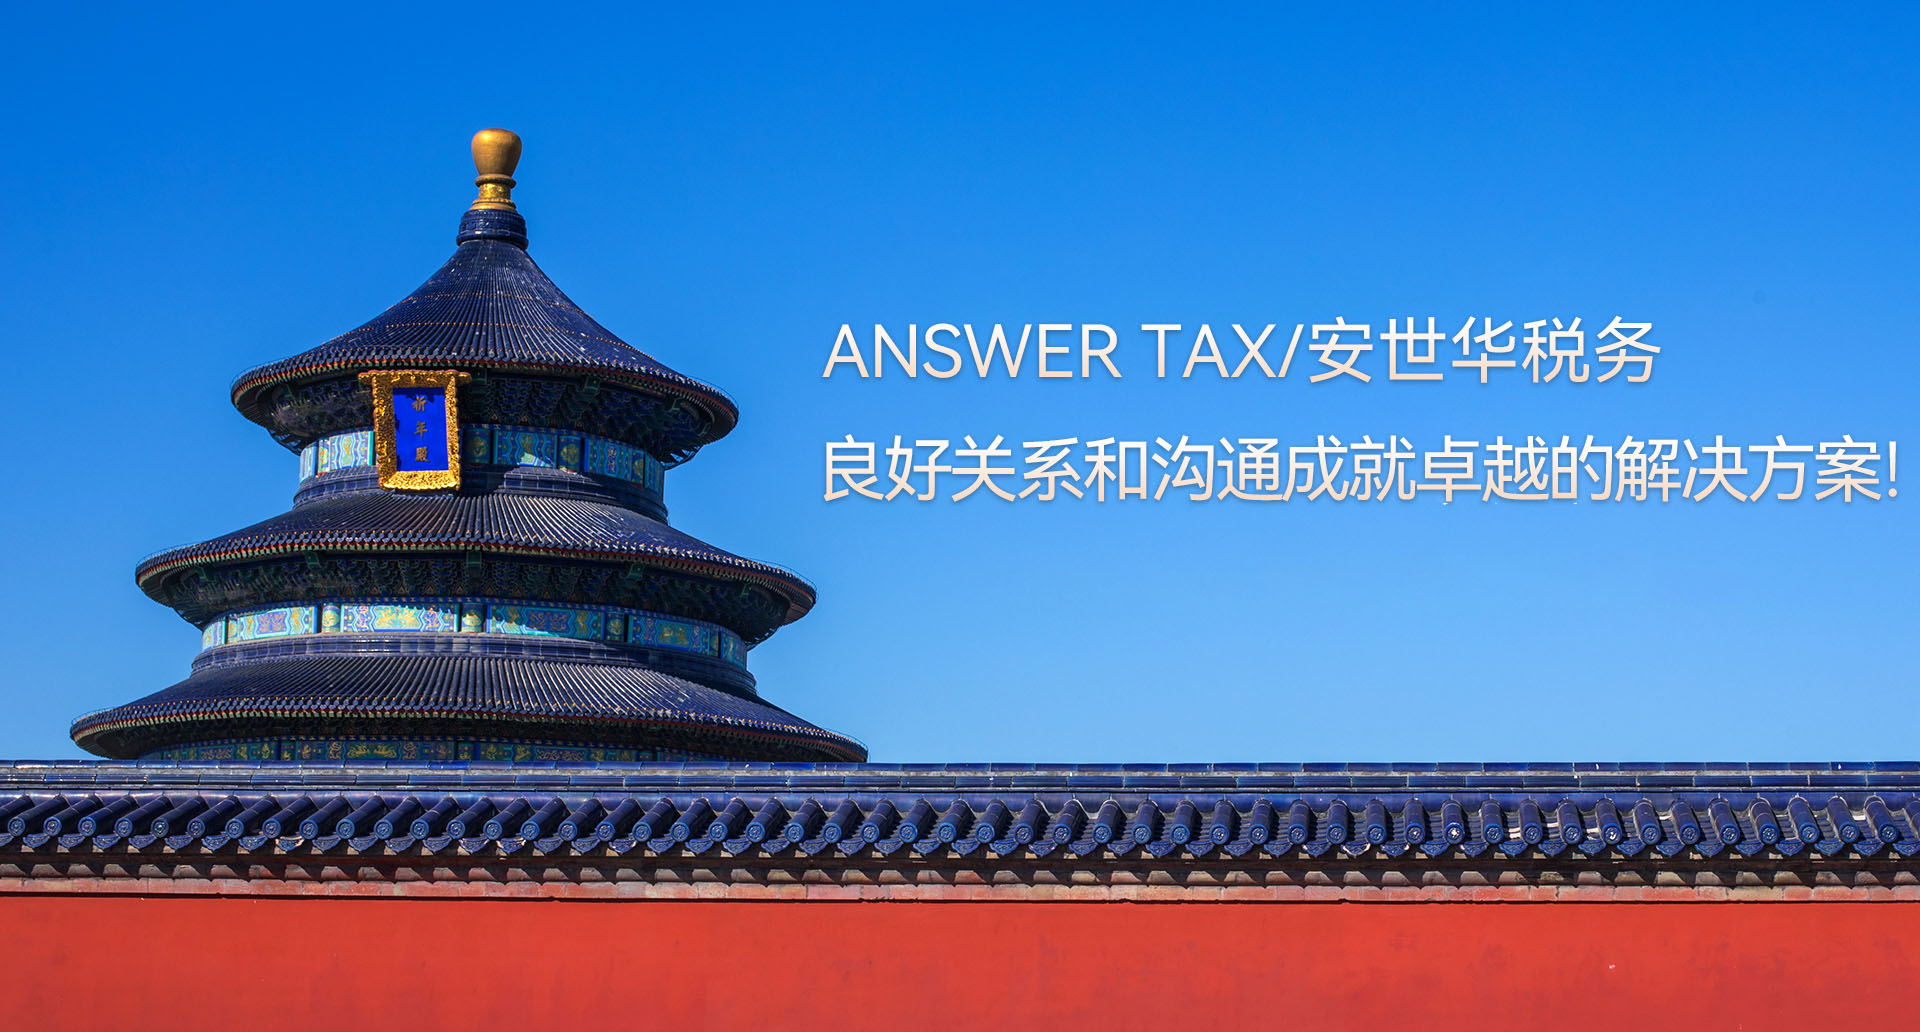 ANSWER TAX/安世华税务-紧密沟通和关系成就高效解决方案，创造价值！